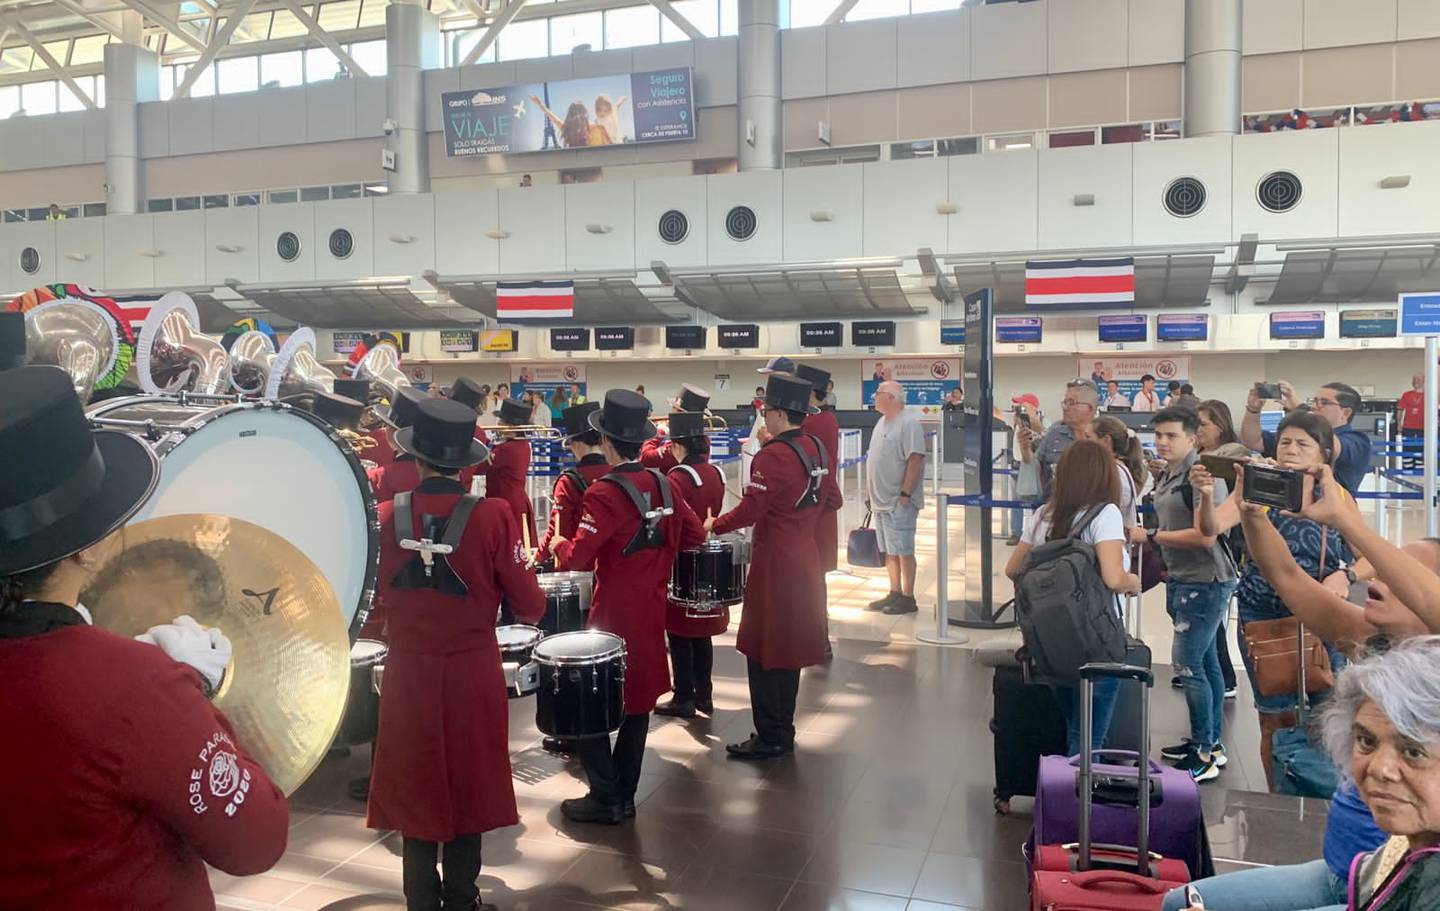 La Banda de Zarcero se llevó los aplausos de nacionales y turistas en el 'lobby' del aeropuerto Juan Santamaría. Foto: Cortesía de Aeris